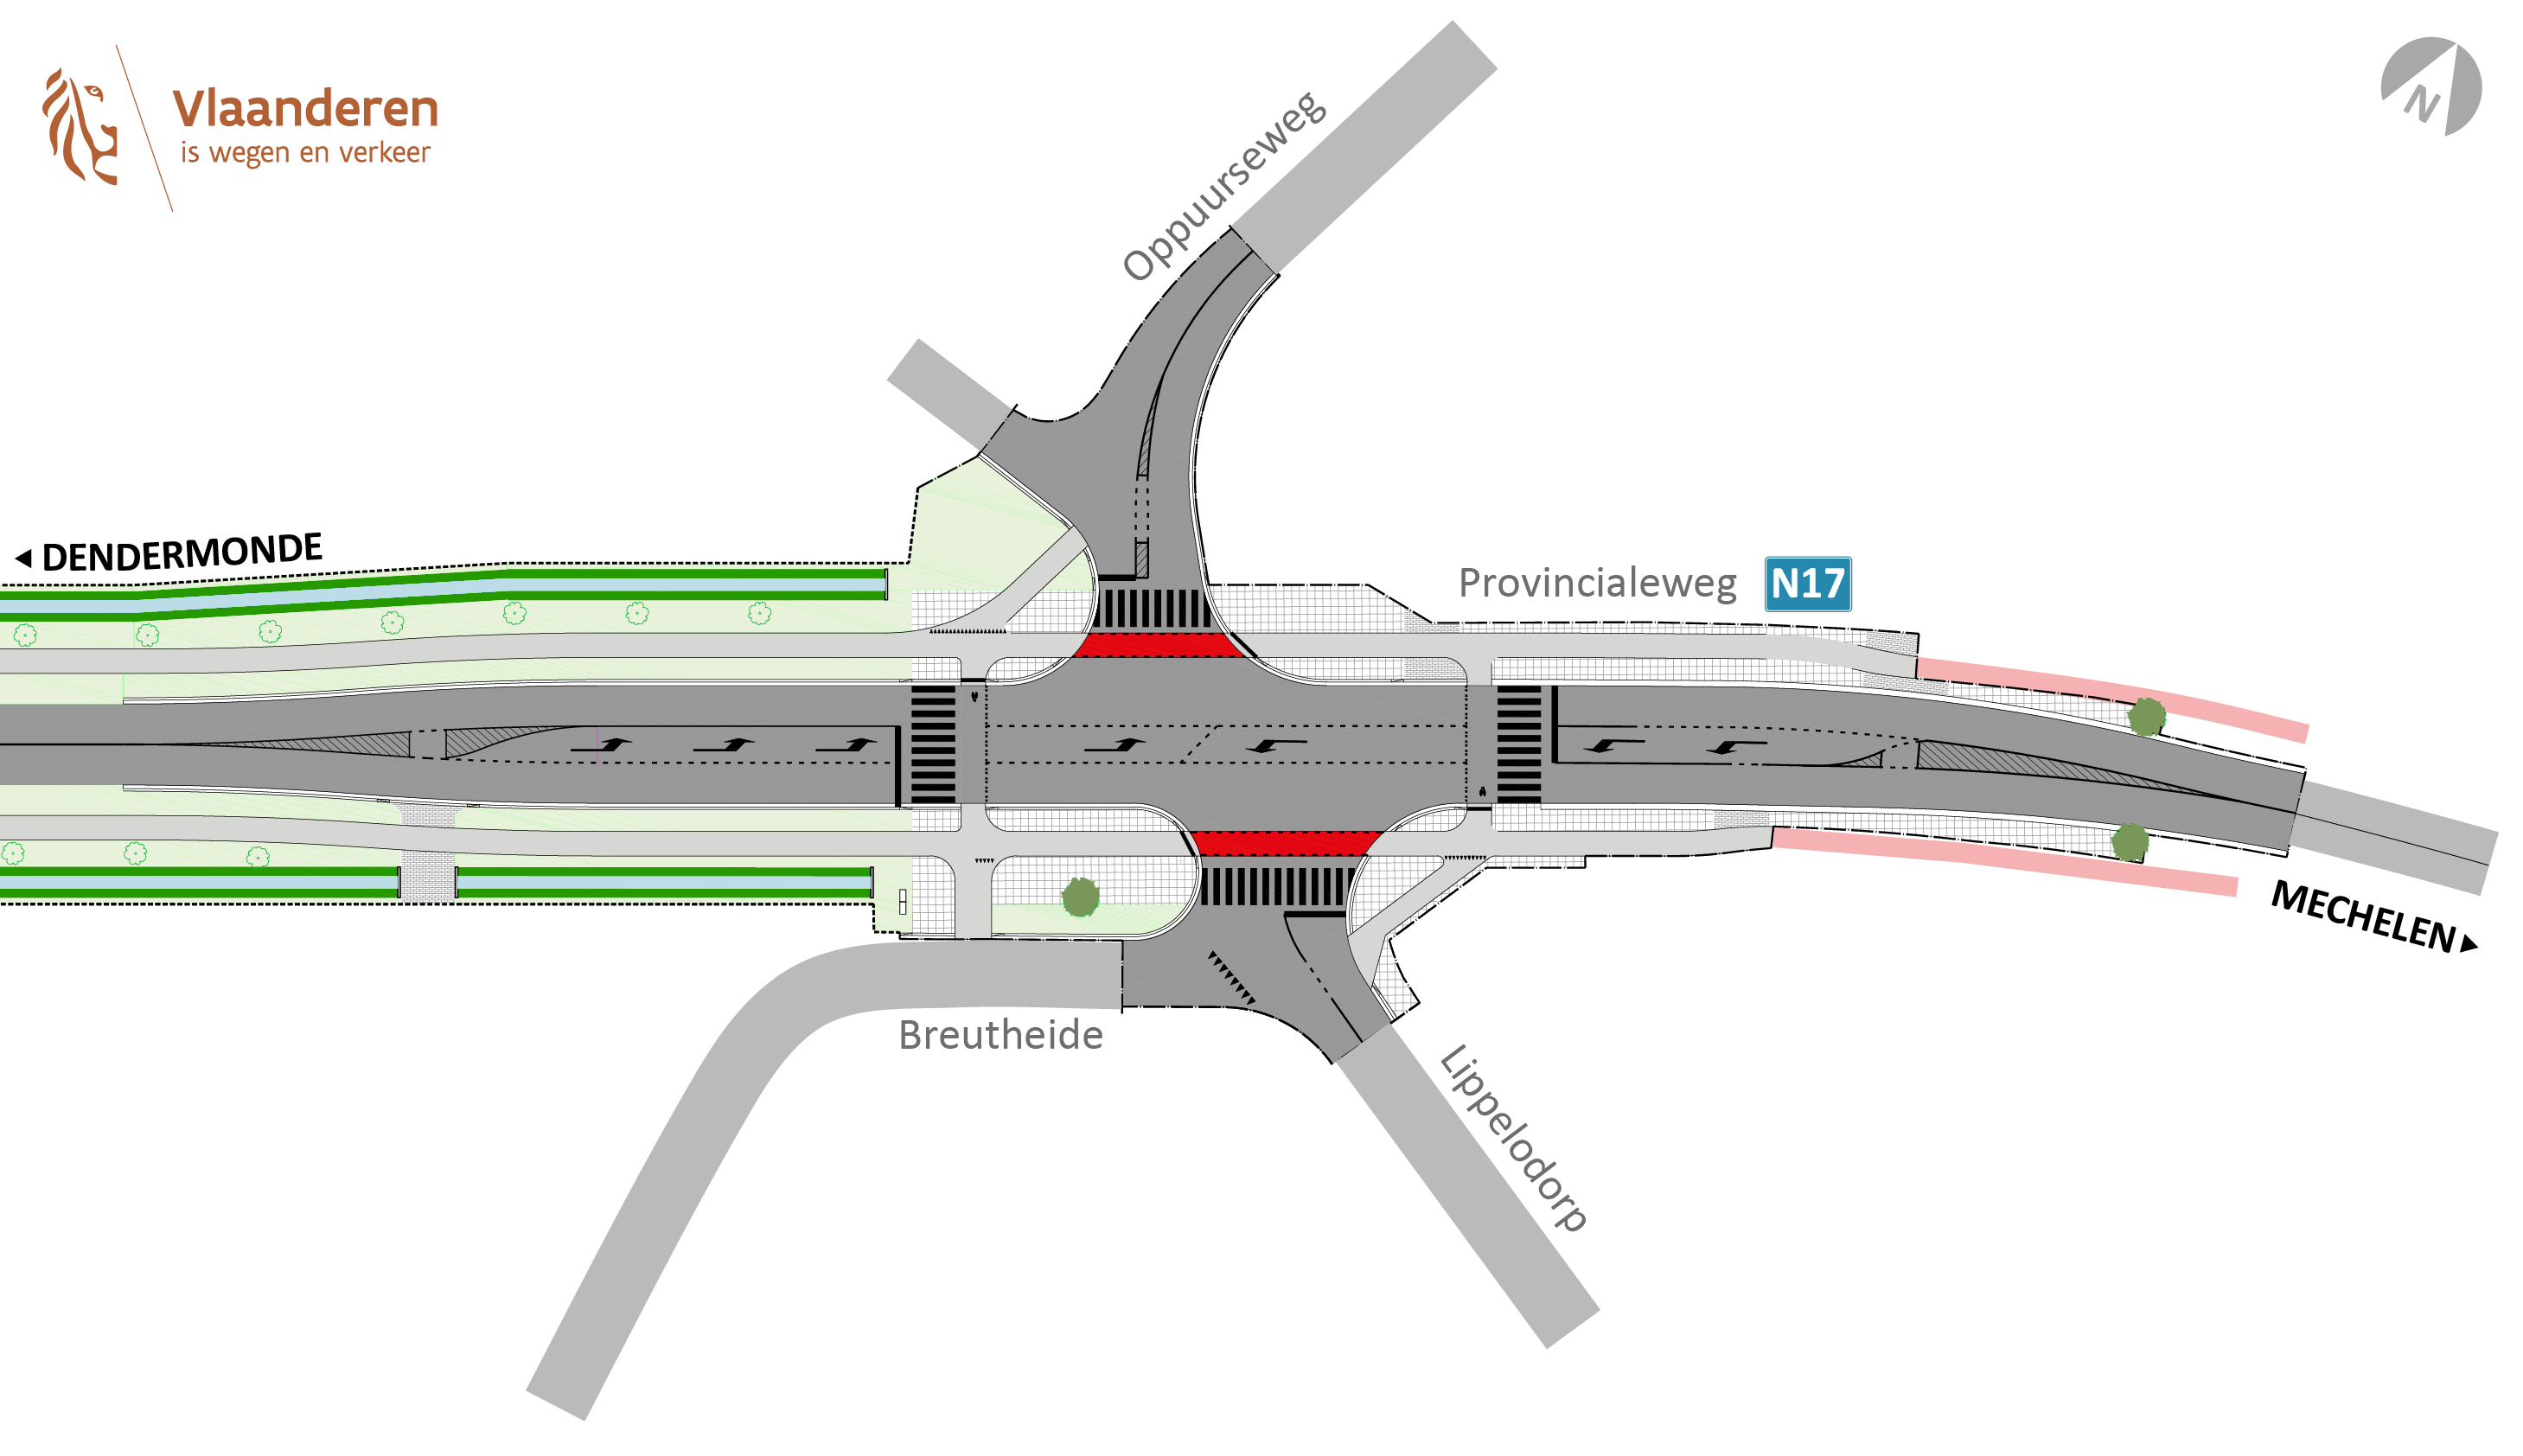 N17 Puurs-Sint-Amands - ontwerp kruispunt Lippelodorp